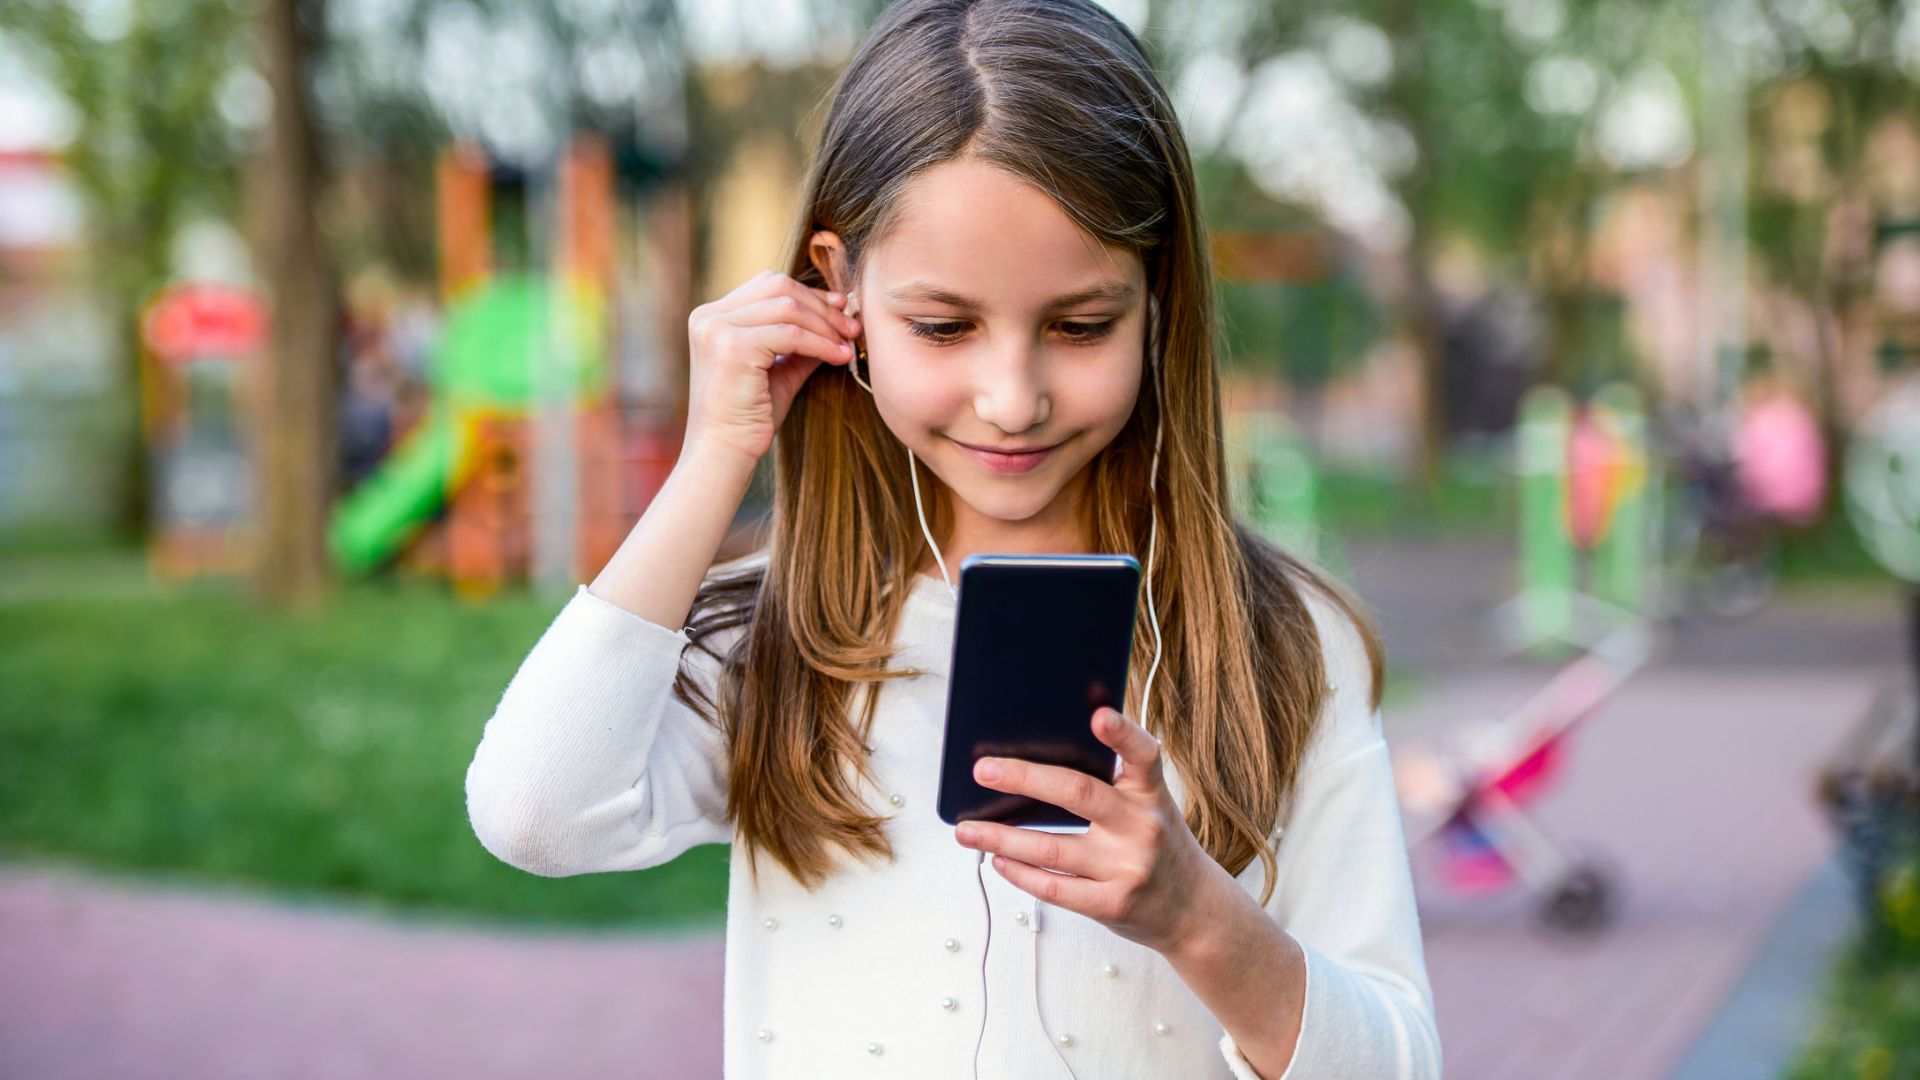 Смартфонът може да помогне на детето ви да развие интерес към музика или филми, затова не бива да му забранявате да го ползва